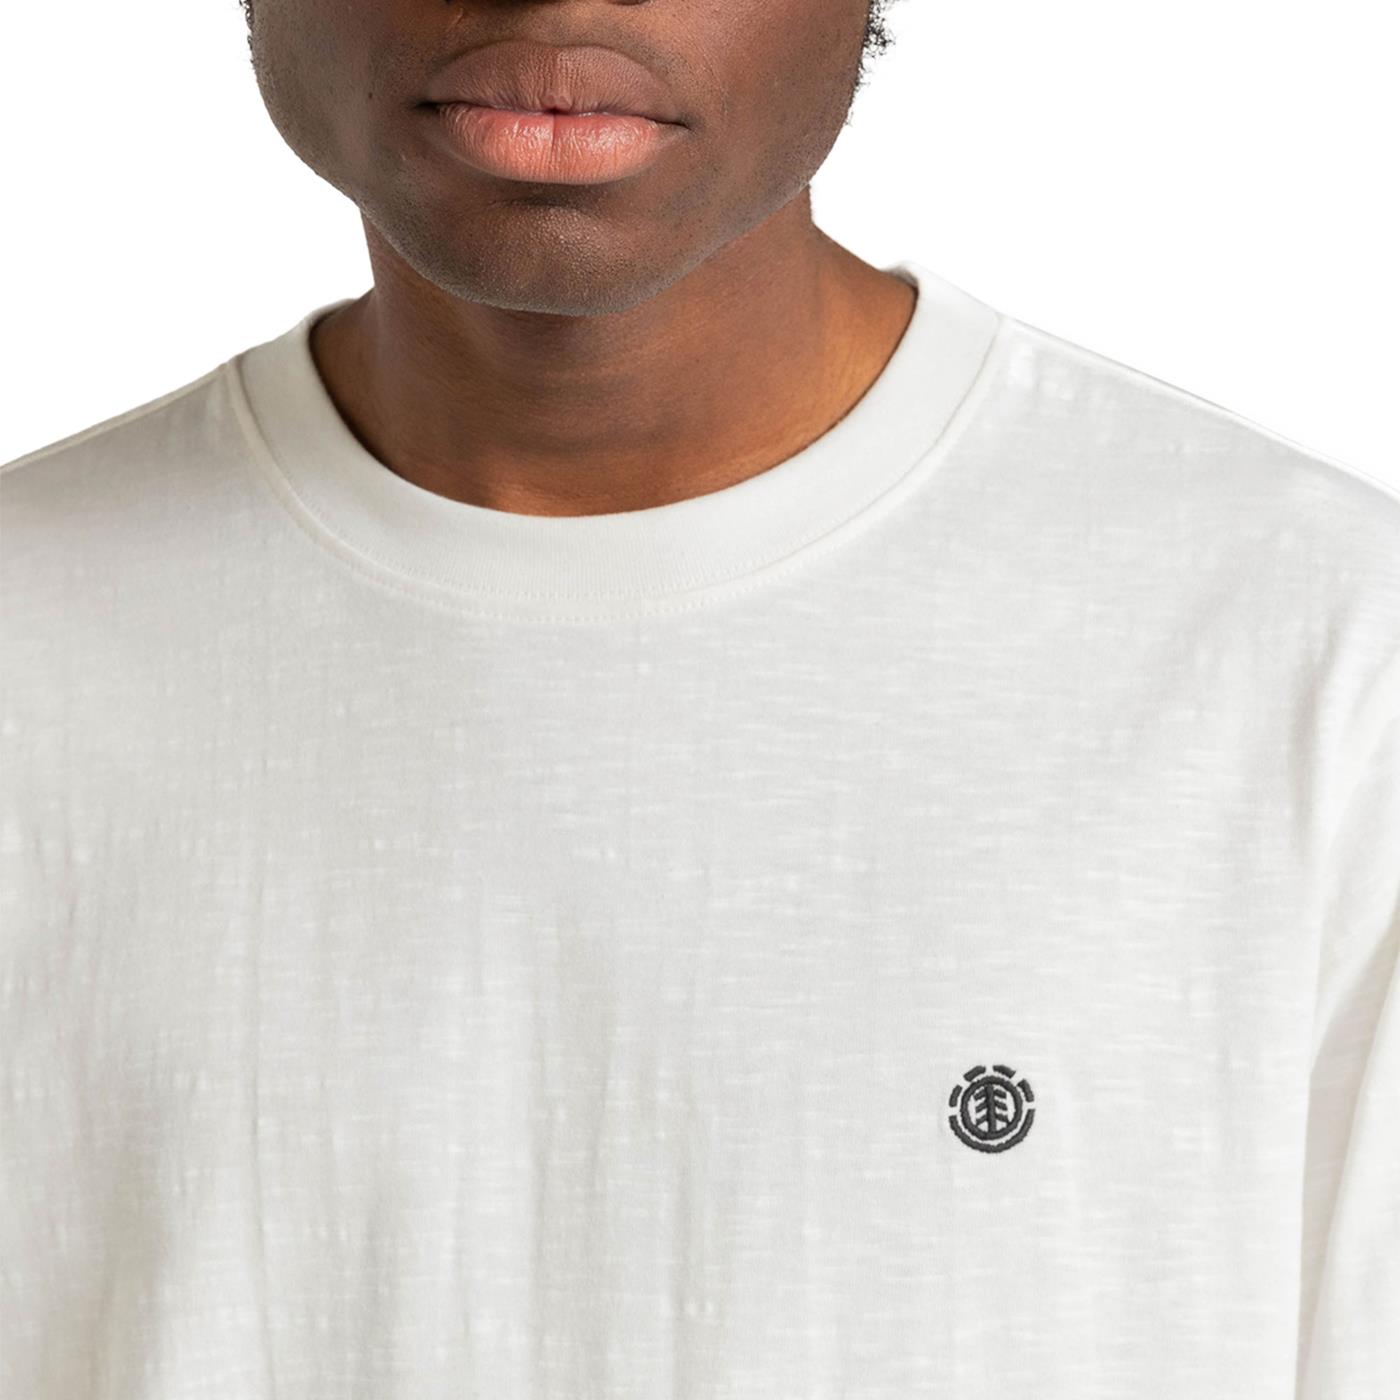 CARIUMA: Unisex Off-White Long Sleeve T-shirt